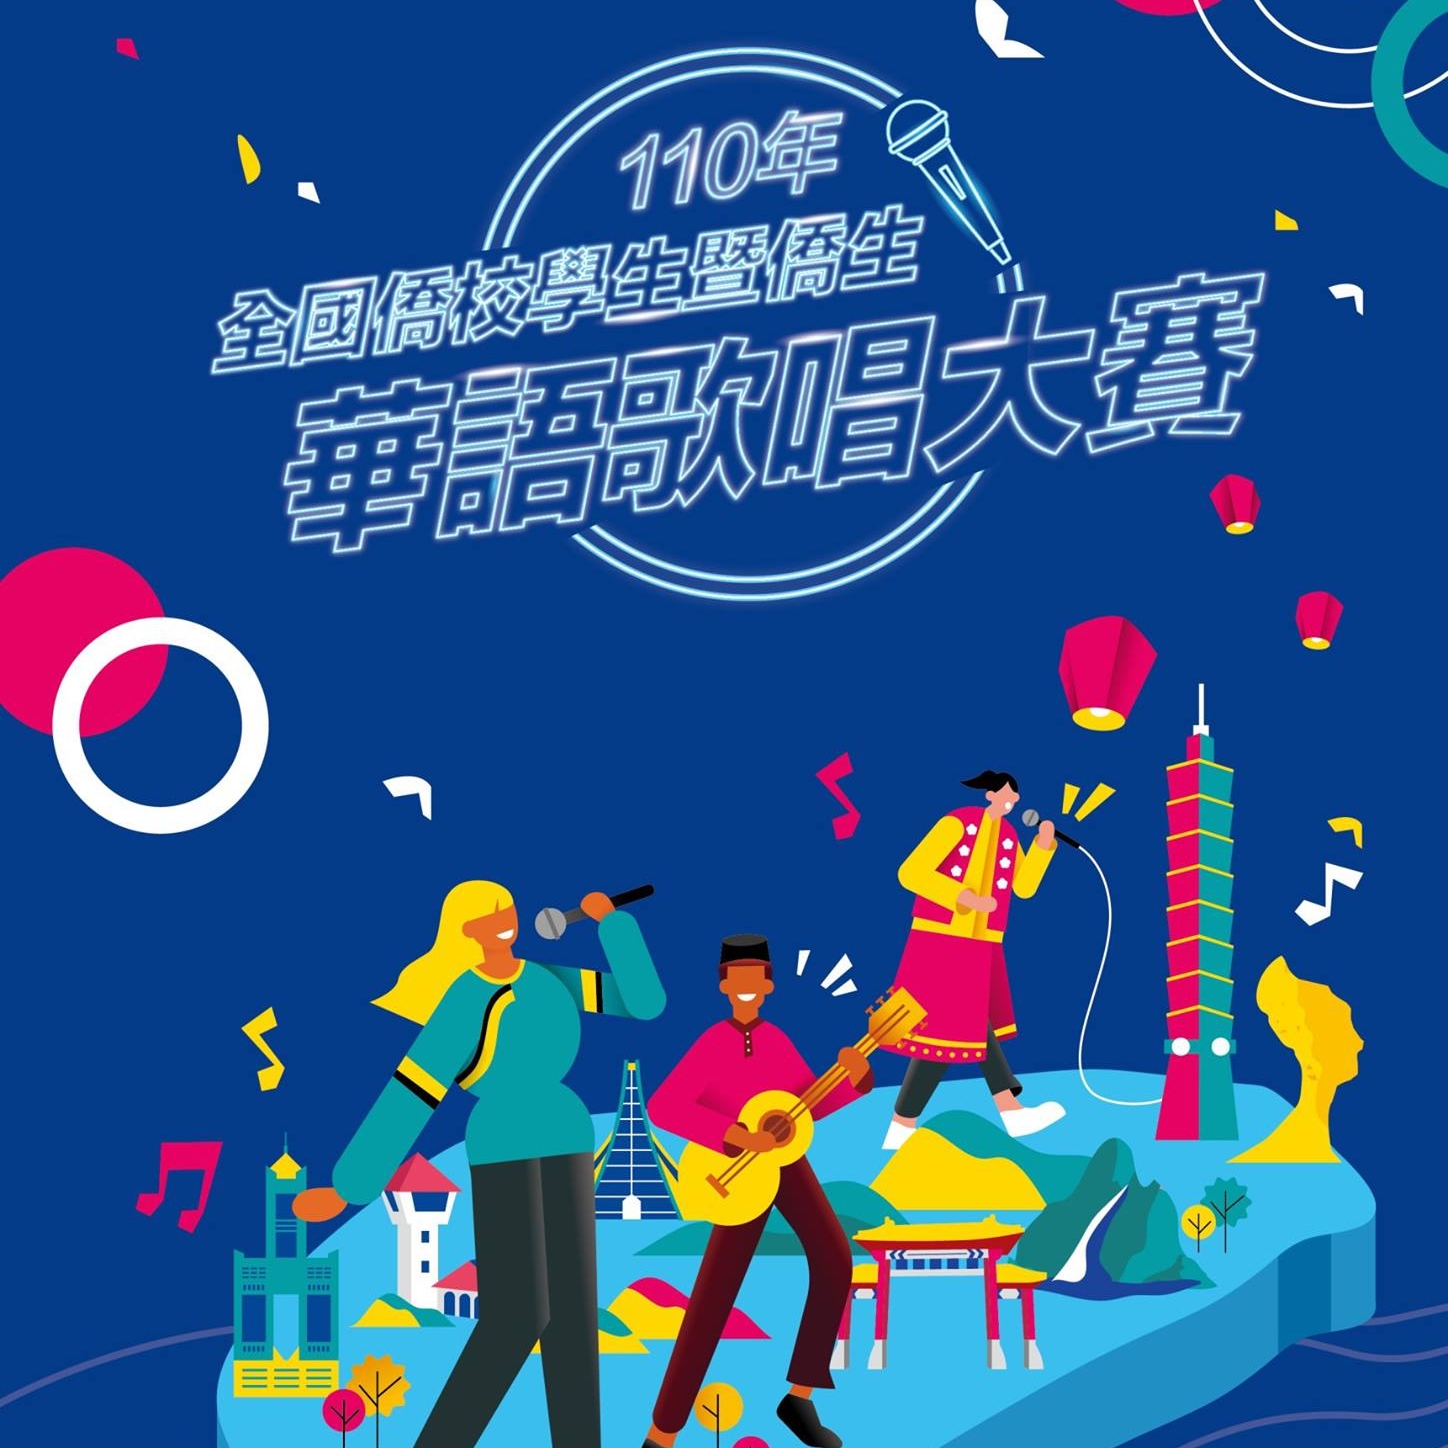 Cuộc thi khuyến khích sinh viên các trường học dành cho Hoa kiều tại Đài Loan và trên khắp thế giới tiếp xúc nhiều hơn với các bài hát tiếng Hoa, tiếng Mân Nam và tiếng dân tộc Khách Gia, đồng thời tìm hiểu về văn hóa dân tộc và ngôn ngữ dân ca của Đài Loan thông qua các bài hát. (Nguồn ảnh: Facebook “Cuộc thi hát tiếng Hoa” dành cho học sinh, sinh viên các trường dành cho Hoa kiều trên toàn thế giới và học sinh, sinh viên Hoa kiều năm 2021)